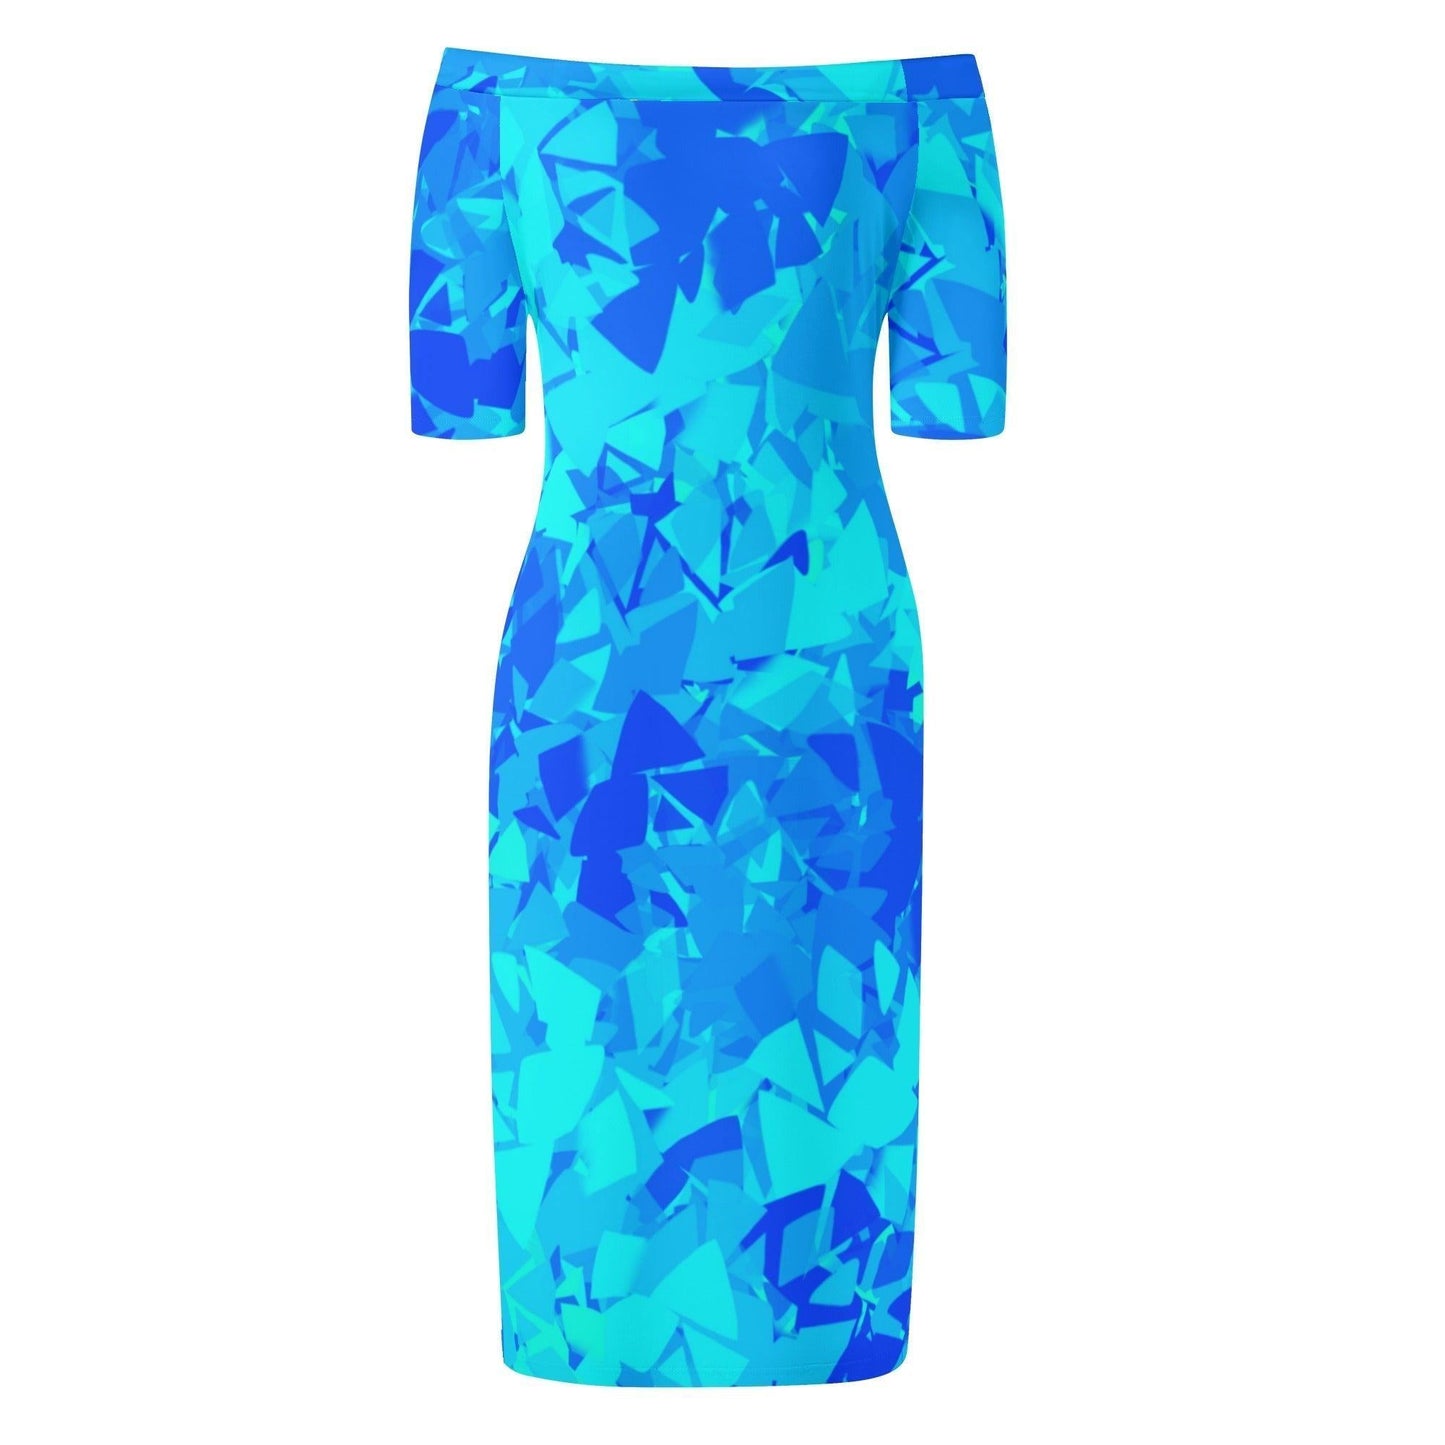 Blue Crystal Off-Shoulder-Kleid -- Blue Crystal Off-Shoulder-Kleid - undefined Off-Shoulder-Kleid | JLR Design